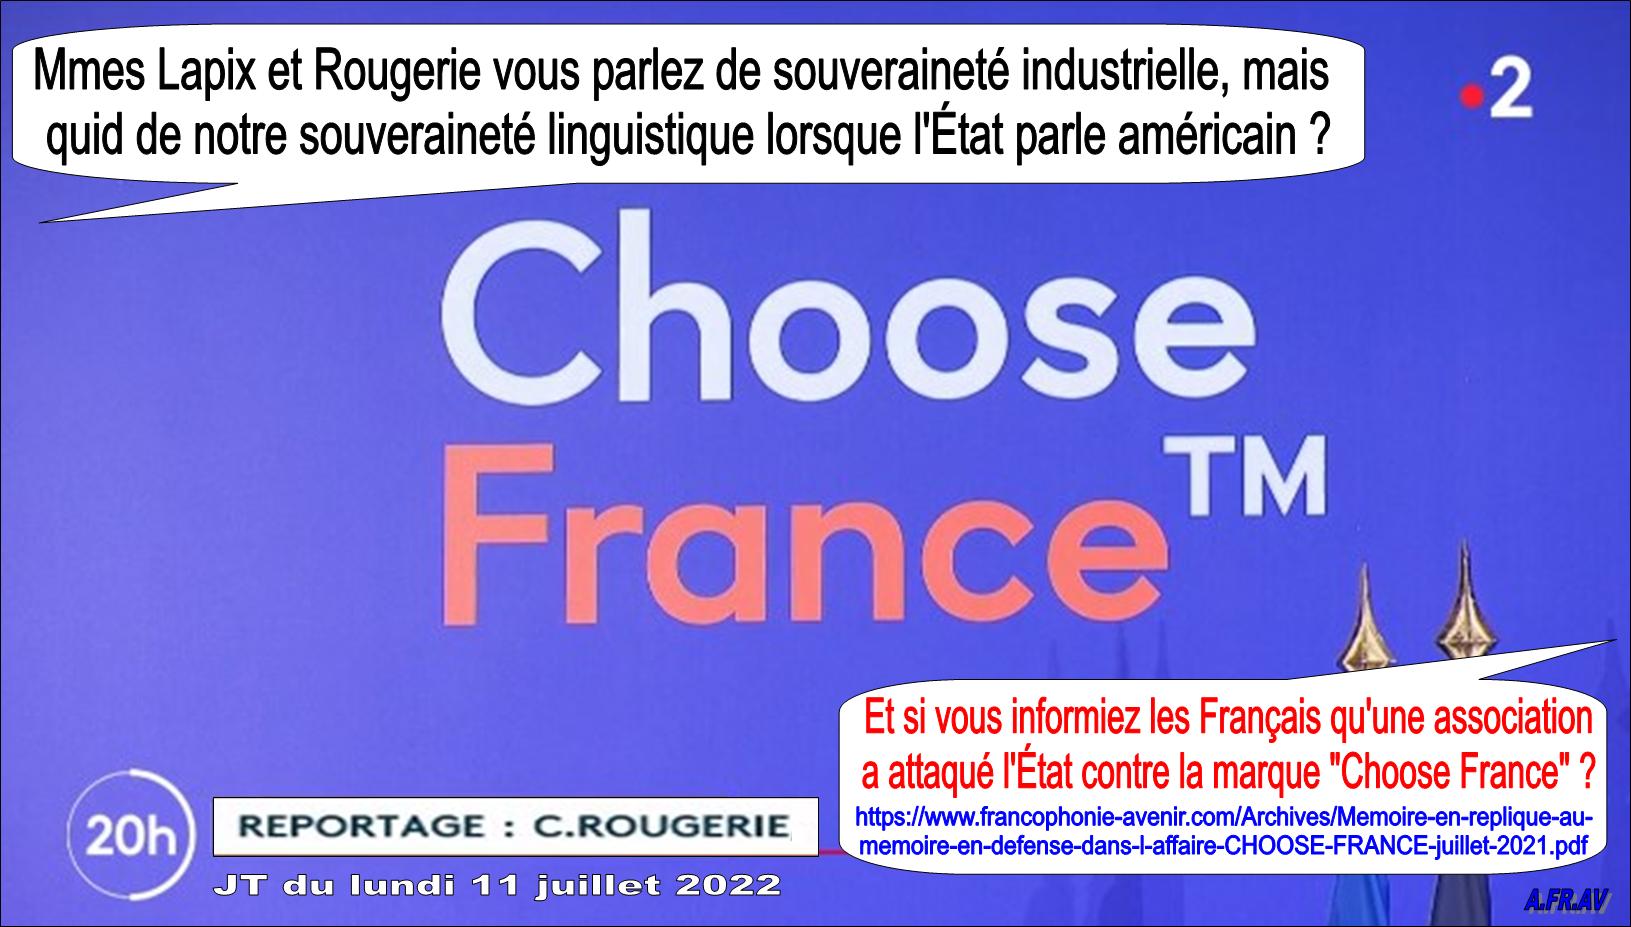 Anne-Sophie Lapix, Catherine Rougerie, Choose France, les journalistes et l'anglais, France Télévisions